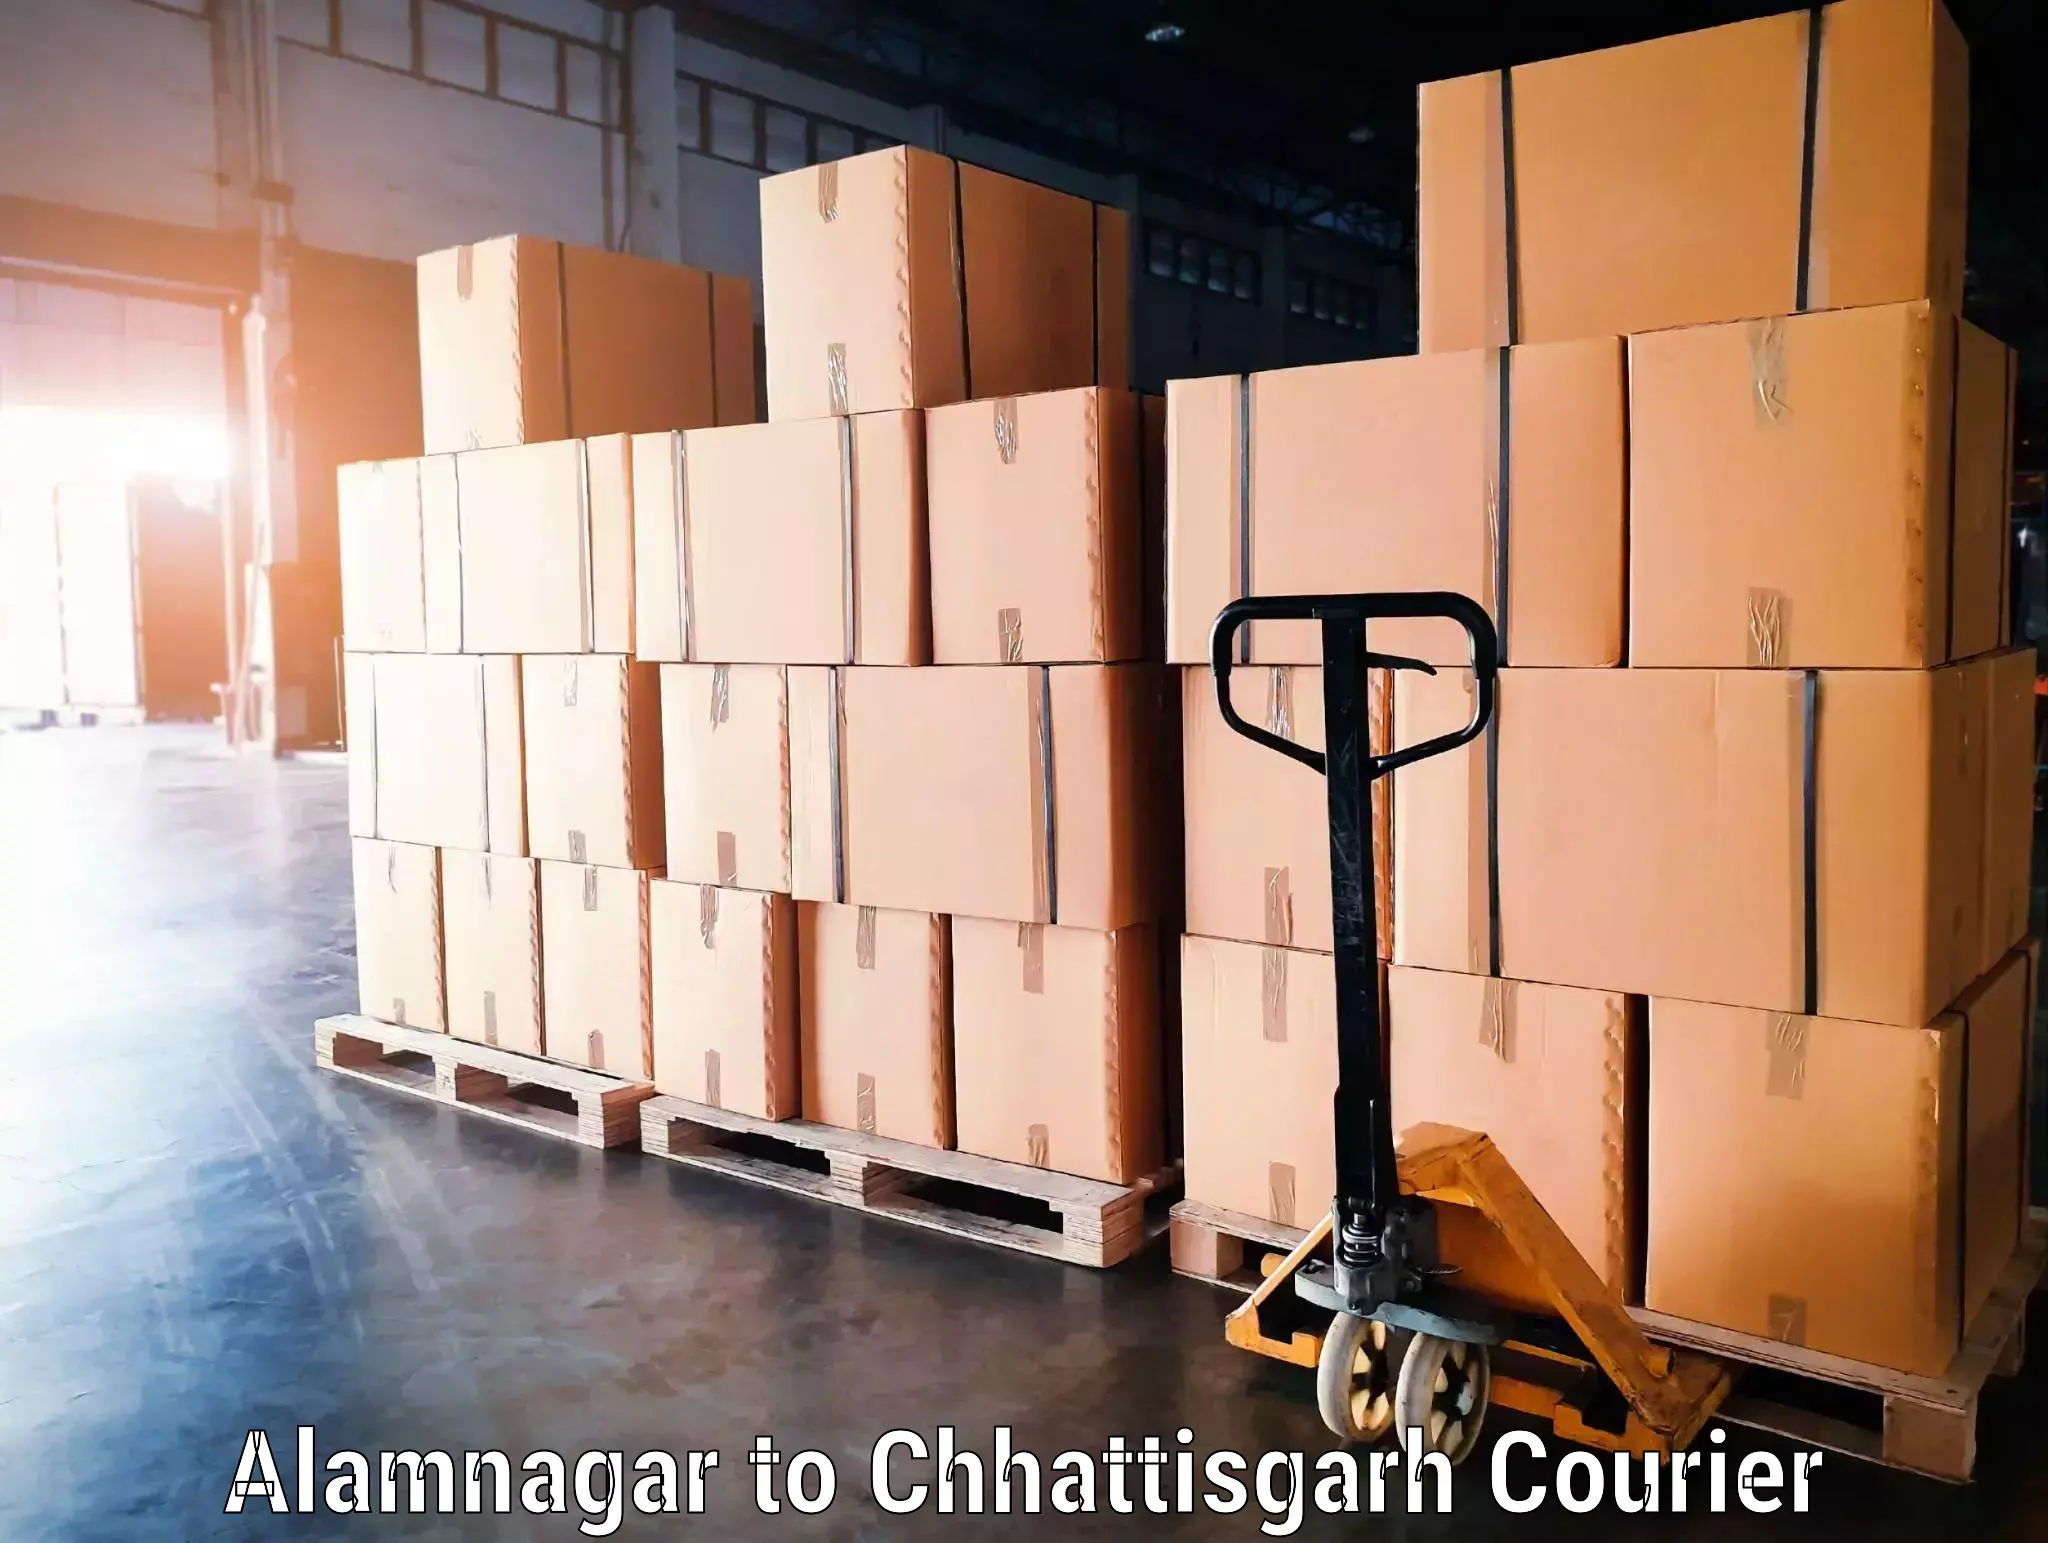 Luggage transport service Alamnagar to Pithora